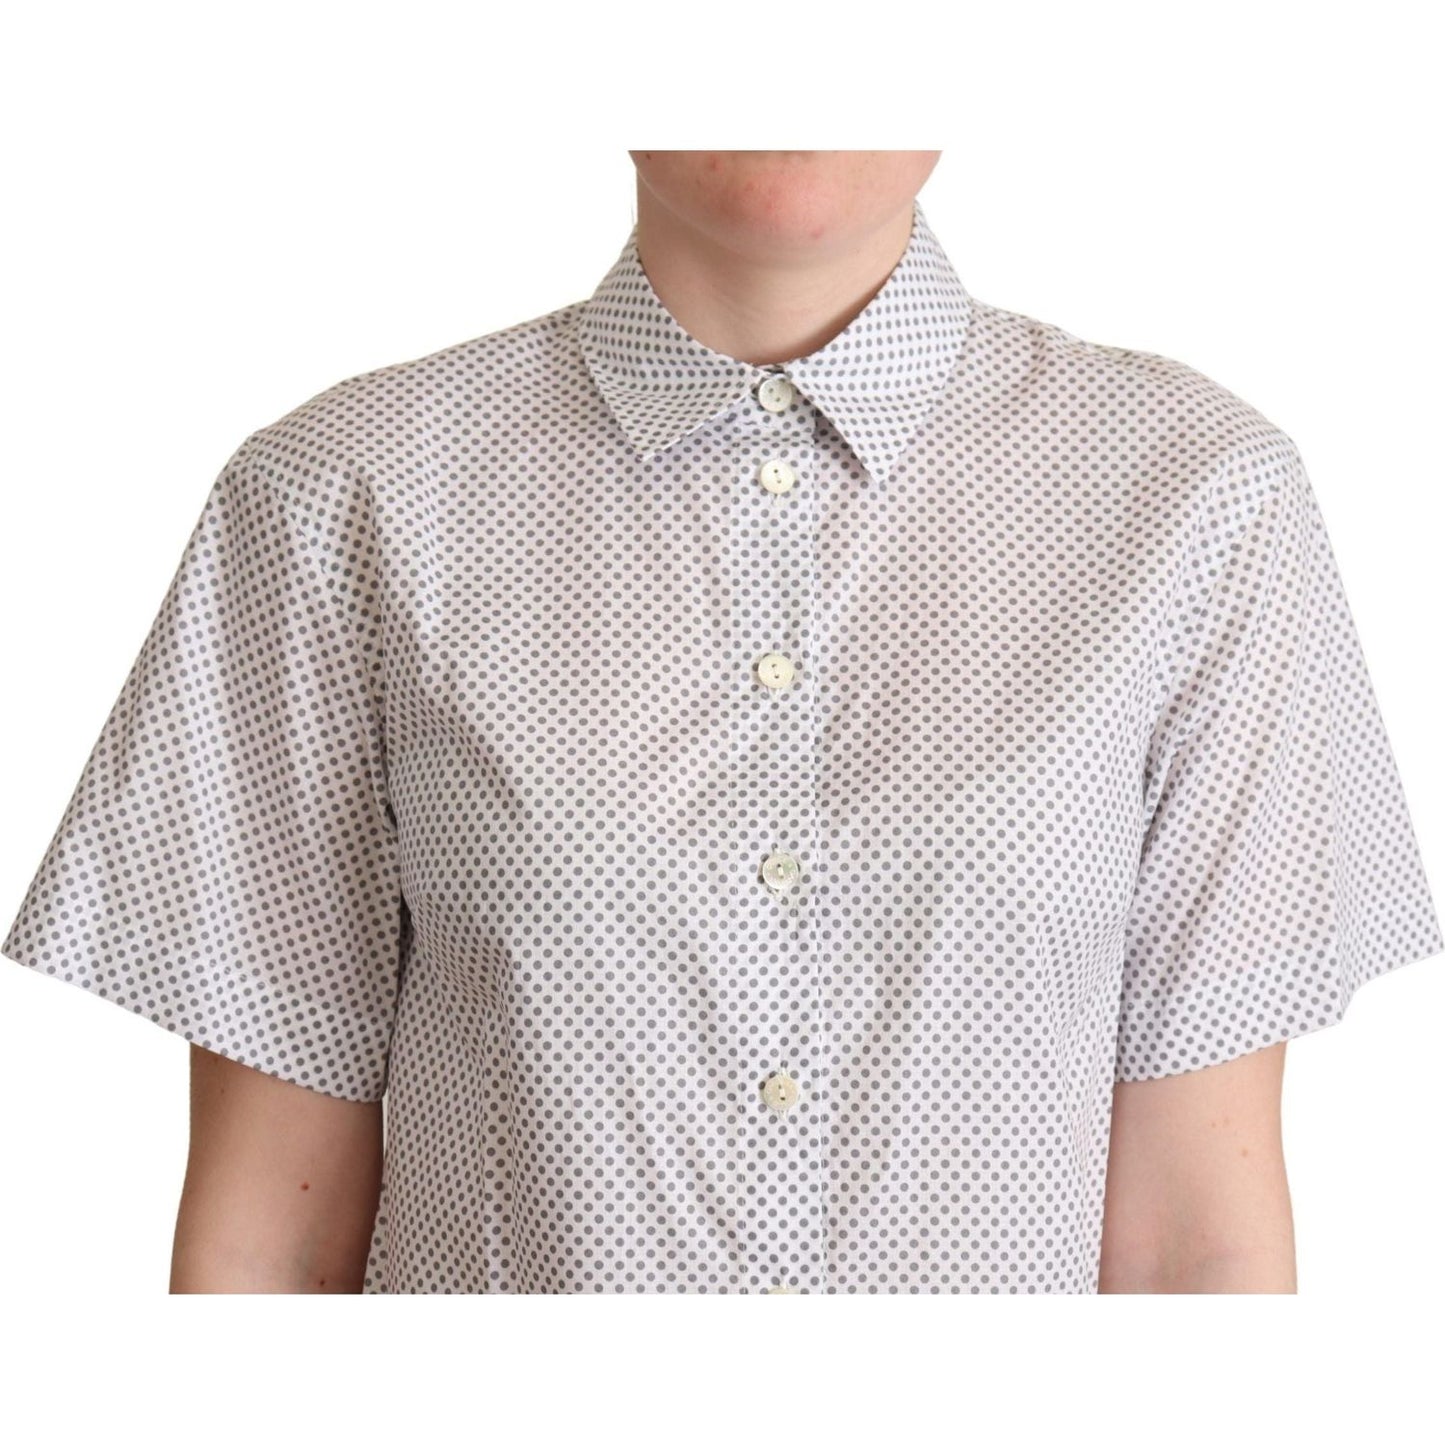 Dolce & Gabbana Chic Gray Polka Dot Short Sleeve Polo white-gray-polka-dots-collared-button-shirt